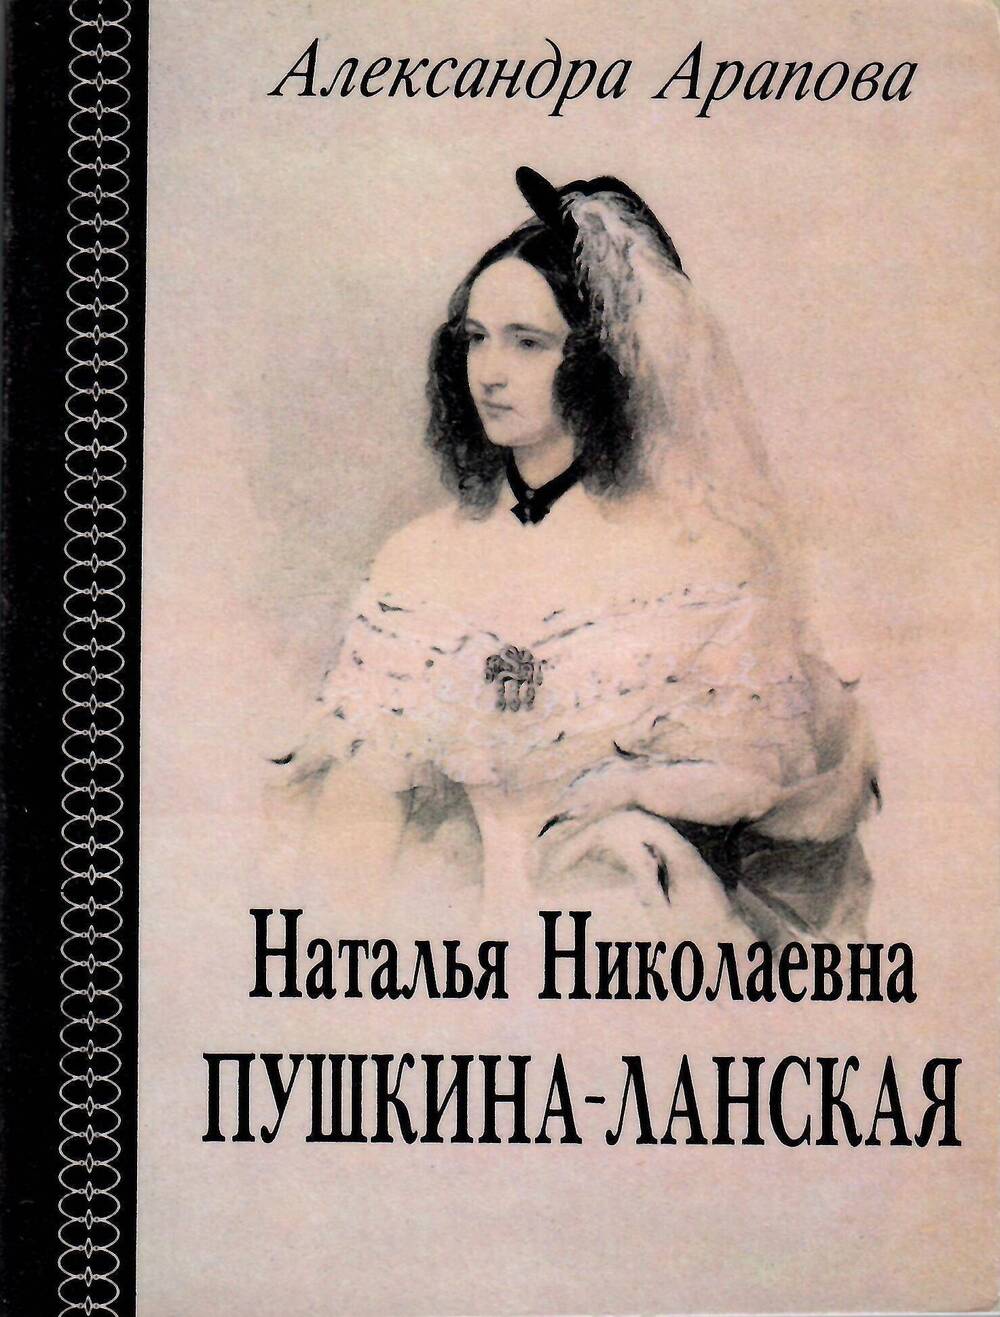 Книга, Александра Арапова Наталья Николаевна Пушкина-Ланская, 1994 г.